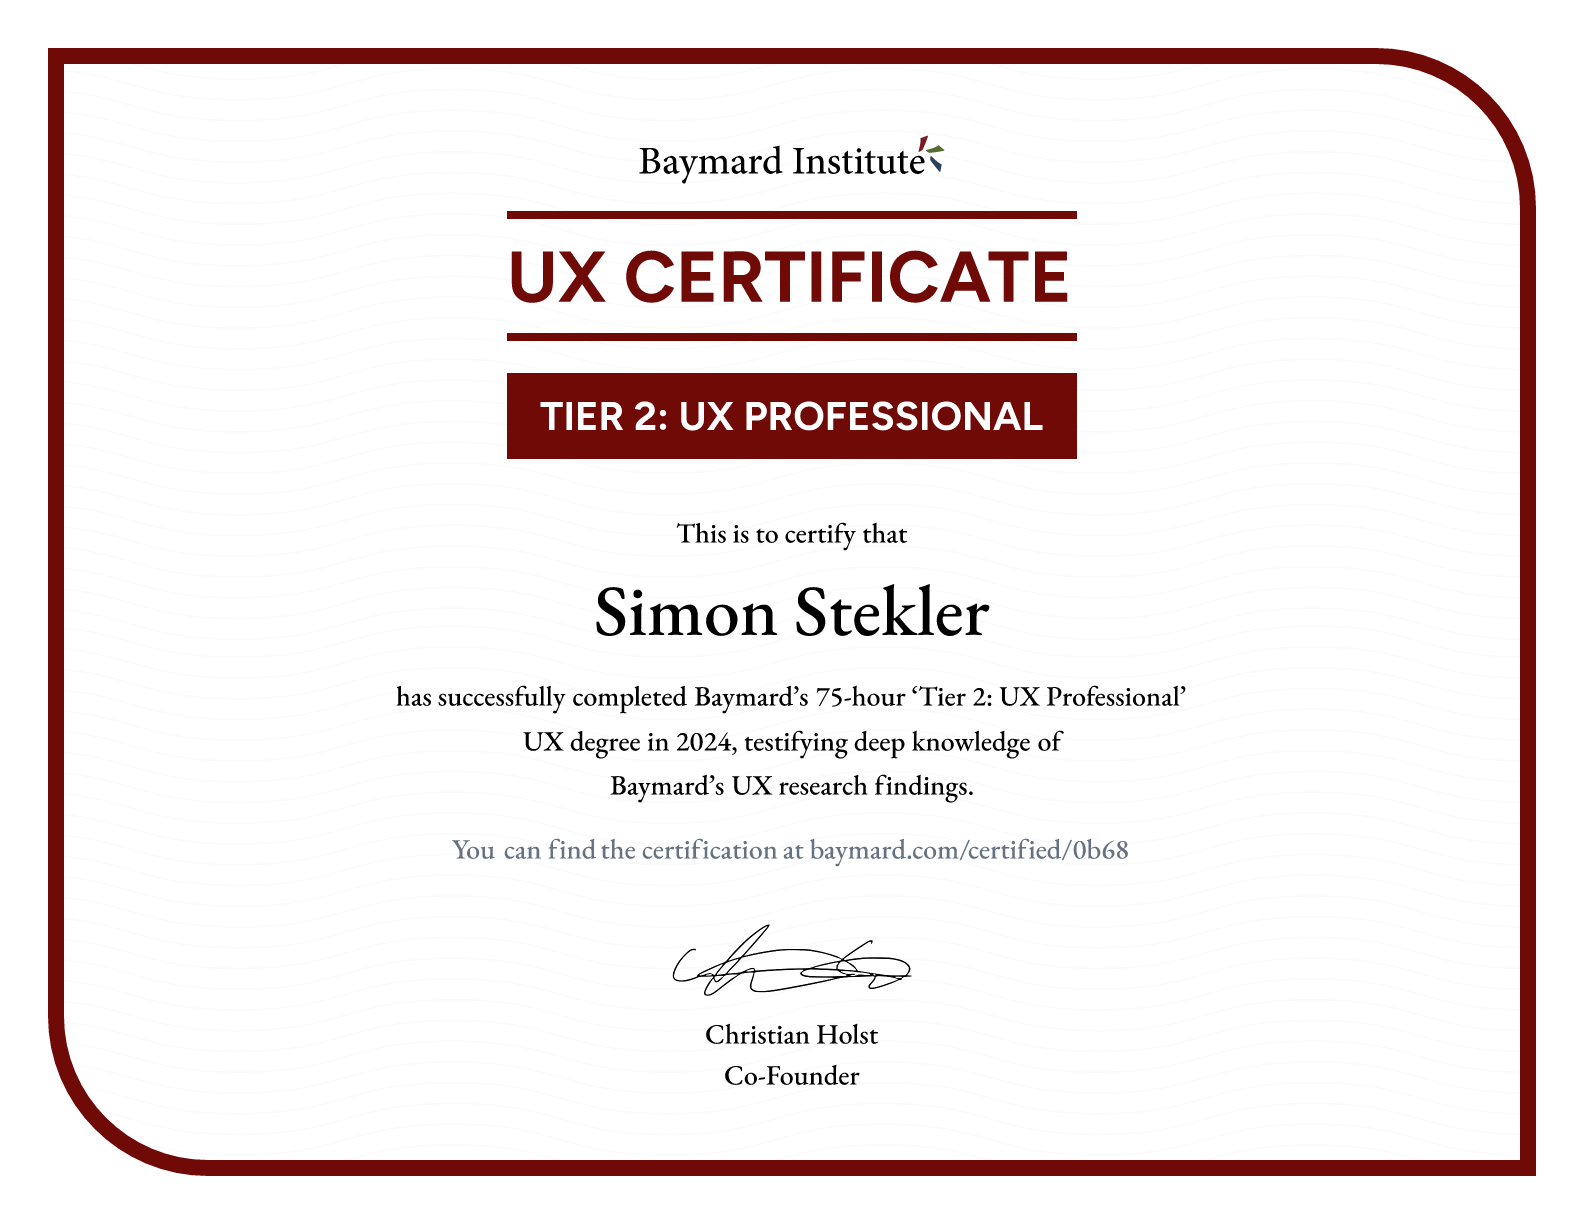 Simon Stekler’s certificate